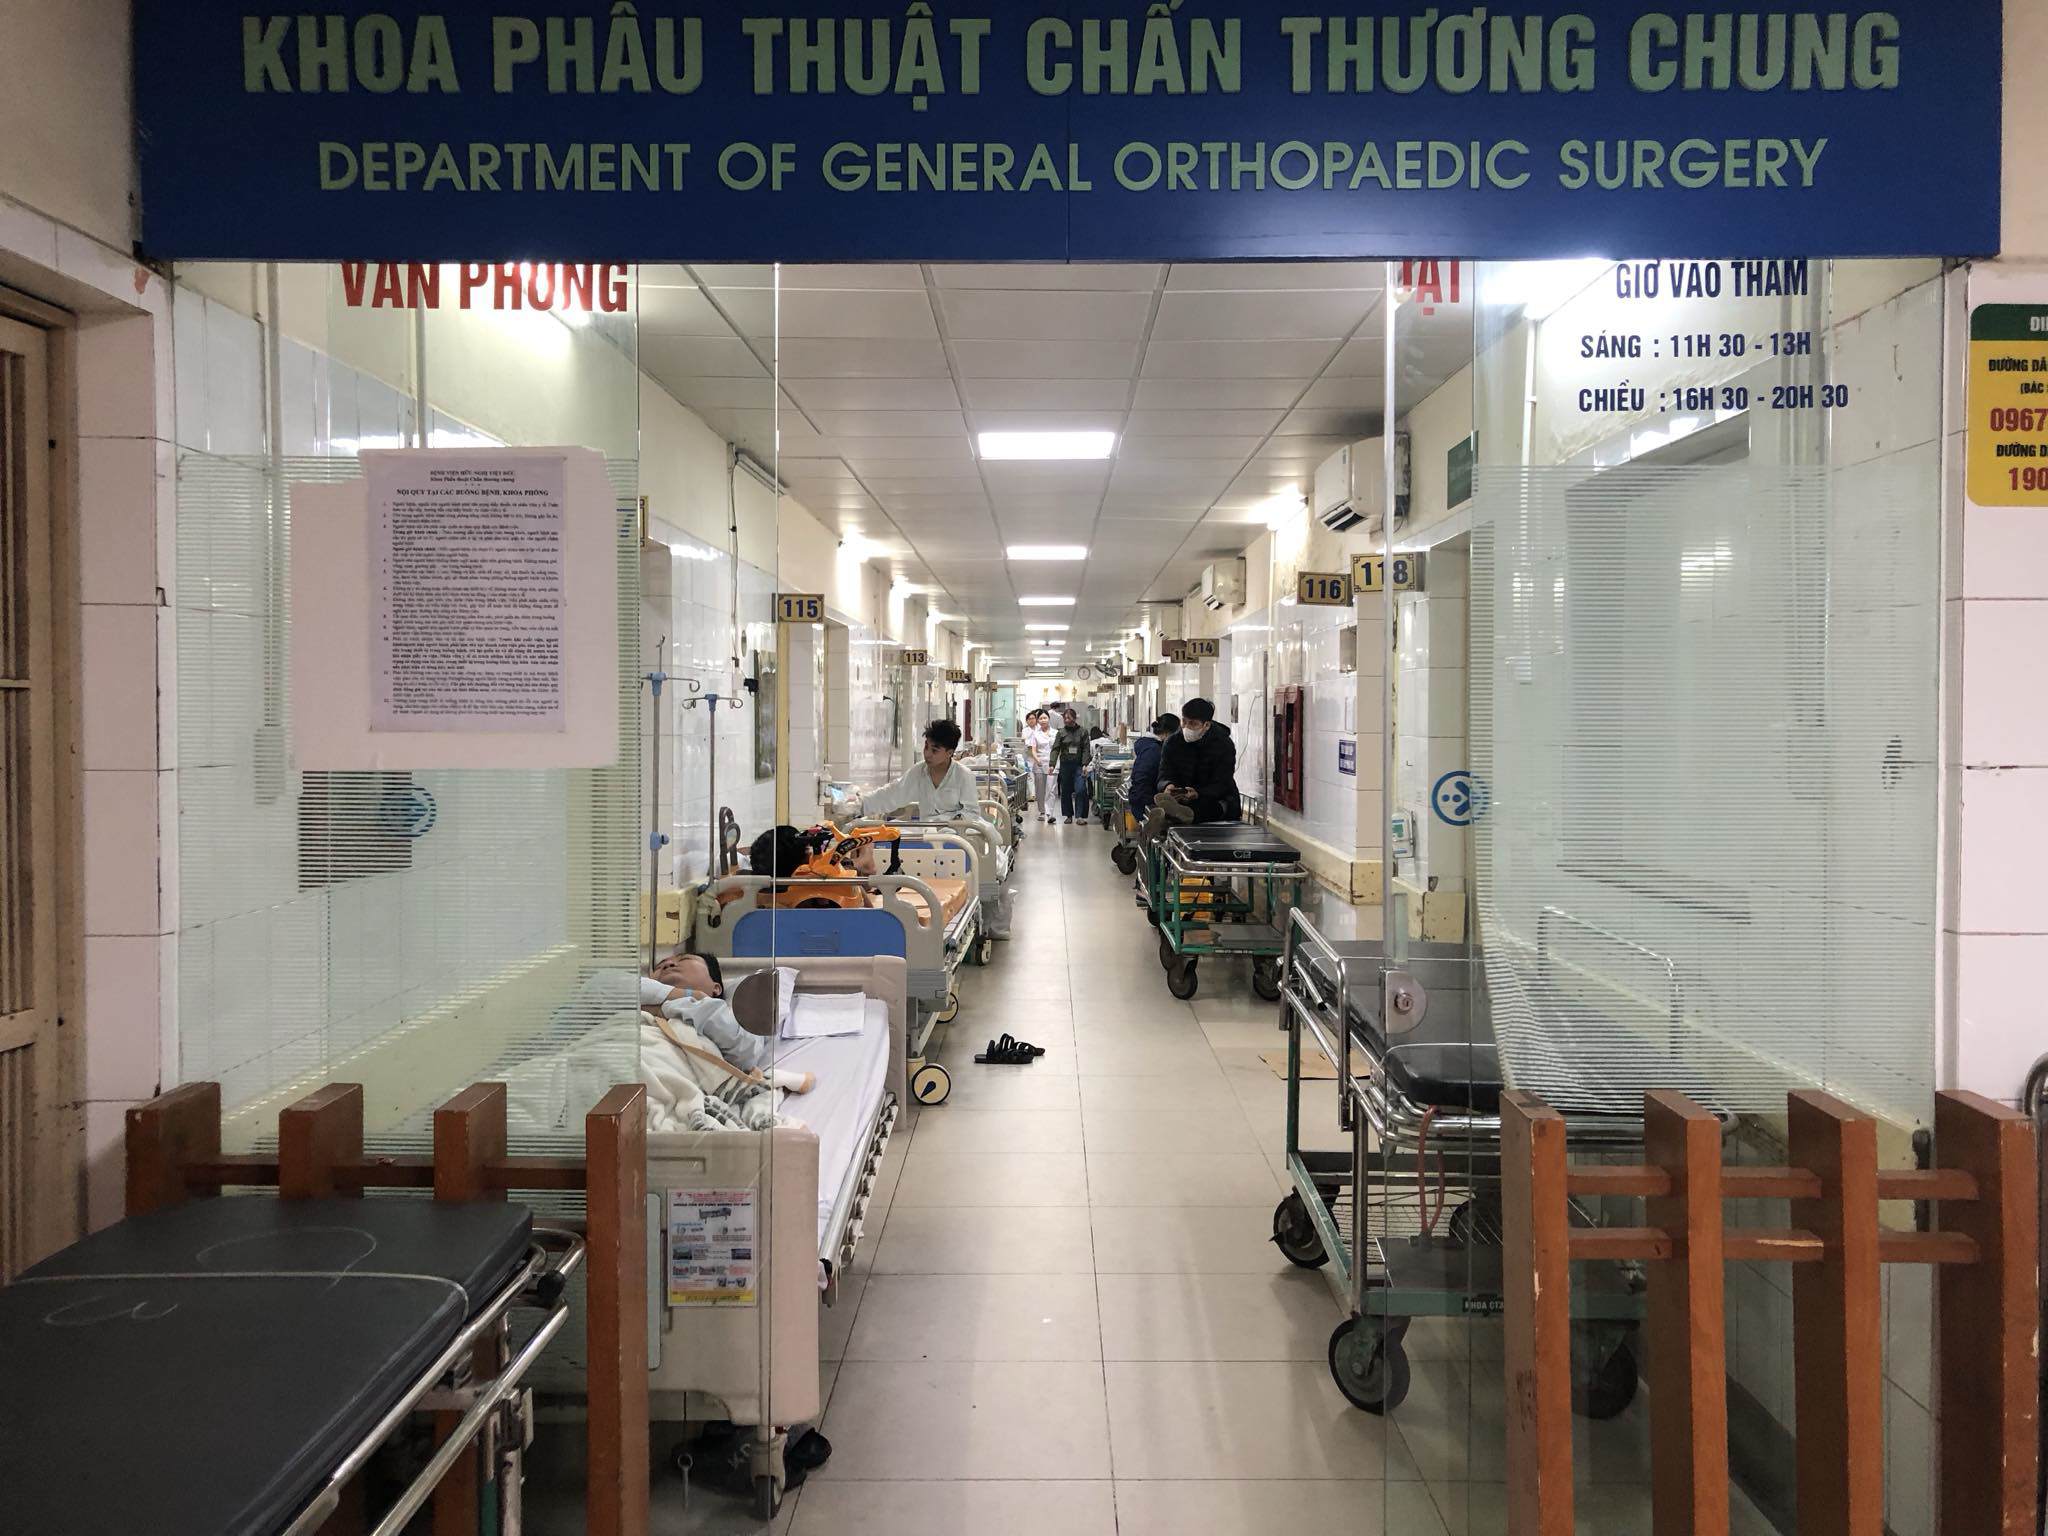 Các khoa phẫu thuật chấn thương của BV Việt Đức luôn trong tình trạng đông đúc, bệnh nhân phải nằm ra cả ngoài hành lang